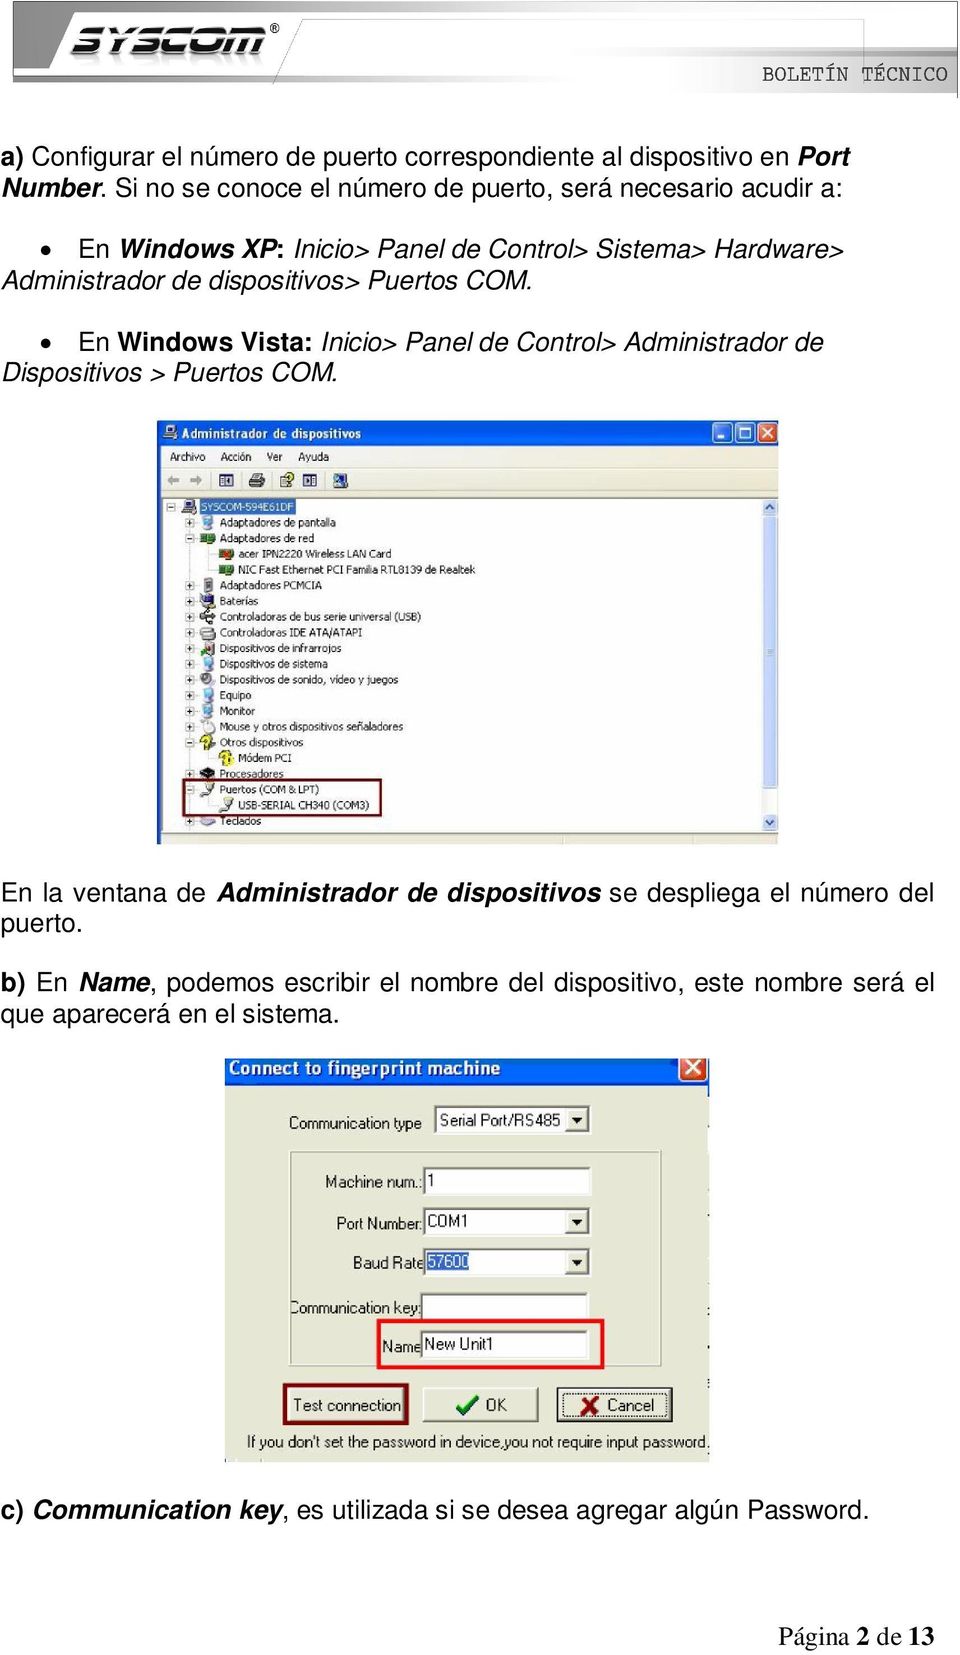 dispositivos> Puertos COM. En Windows Vista: Inicio> Panel de Control> Administrador de Dispositivos > Puertos COM.